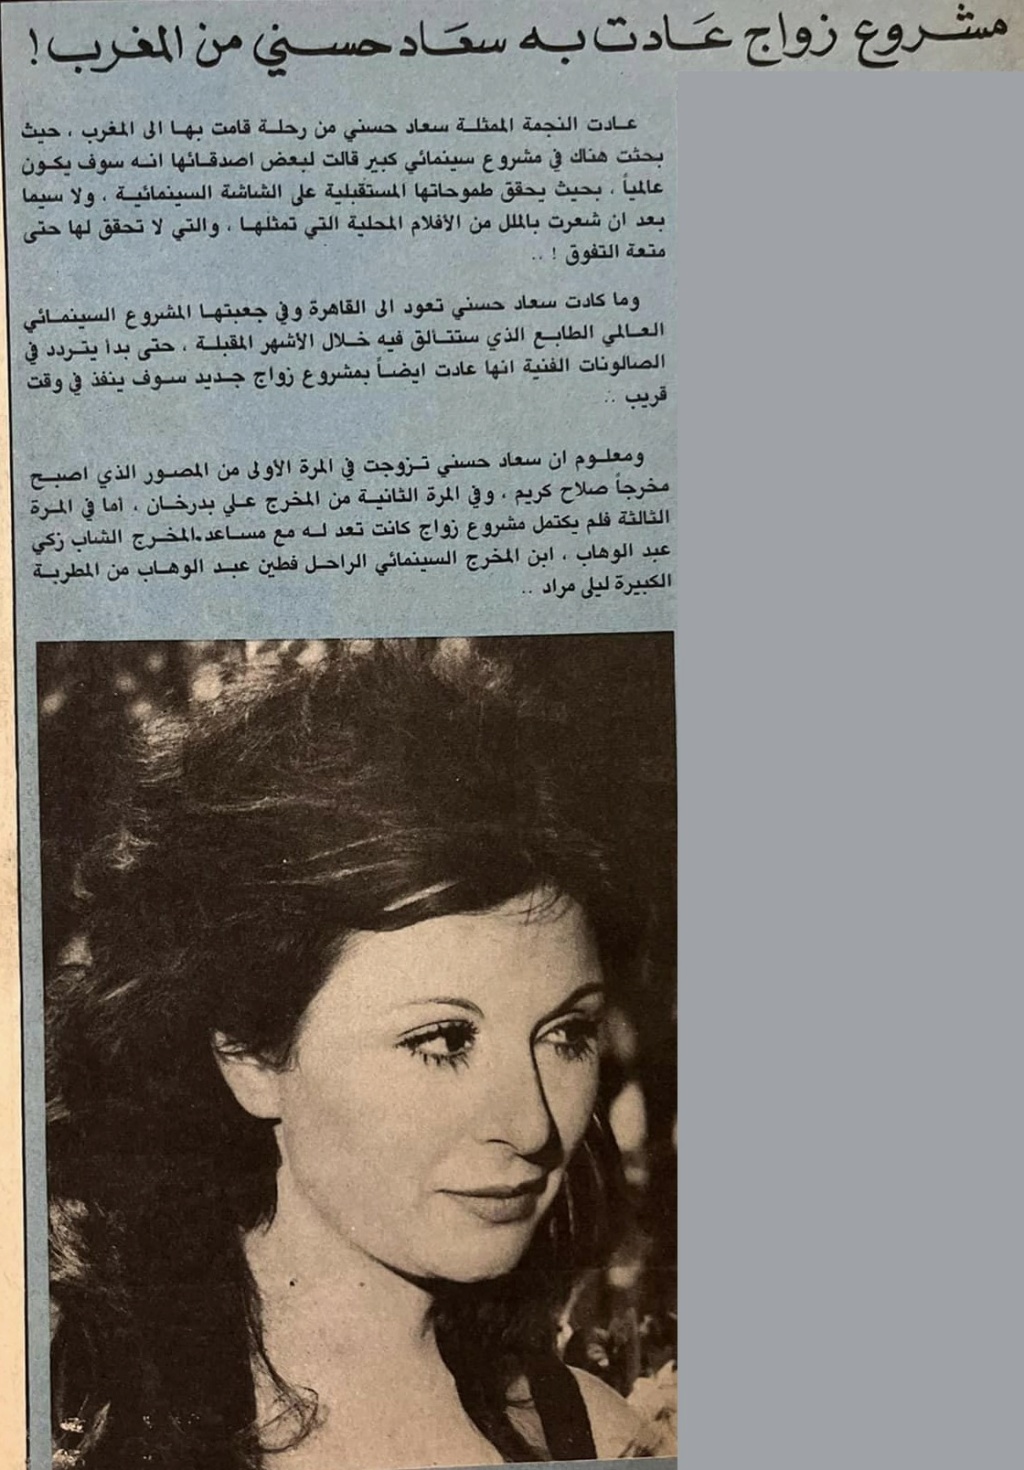 سعاد - خبر صحفي : مشروع زواج عادت به سعاد حسني من المغرب ! 1983 م Ai_iy_10